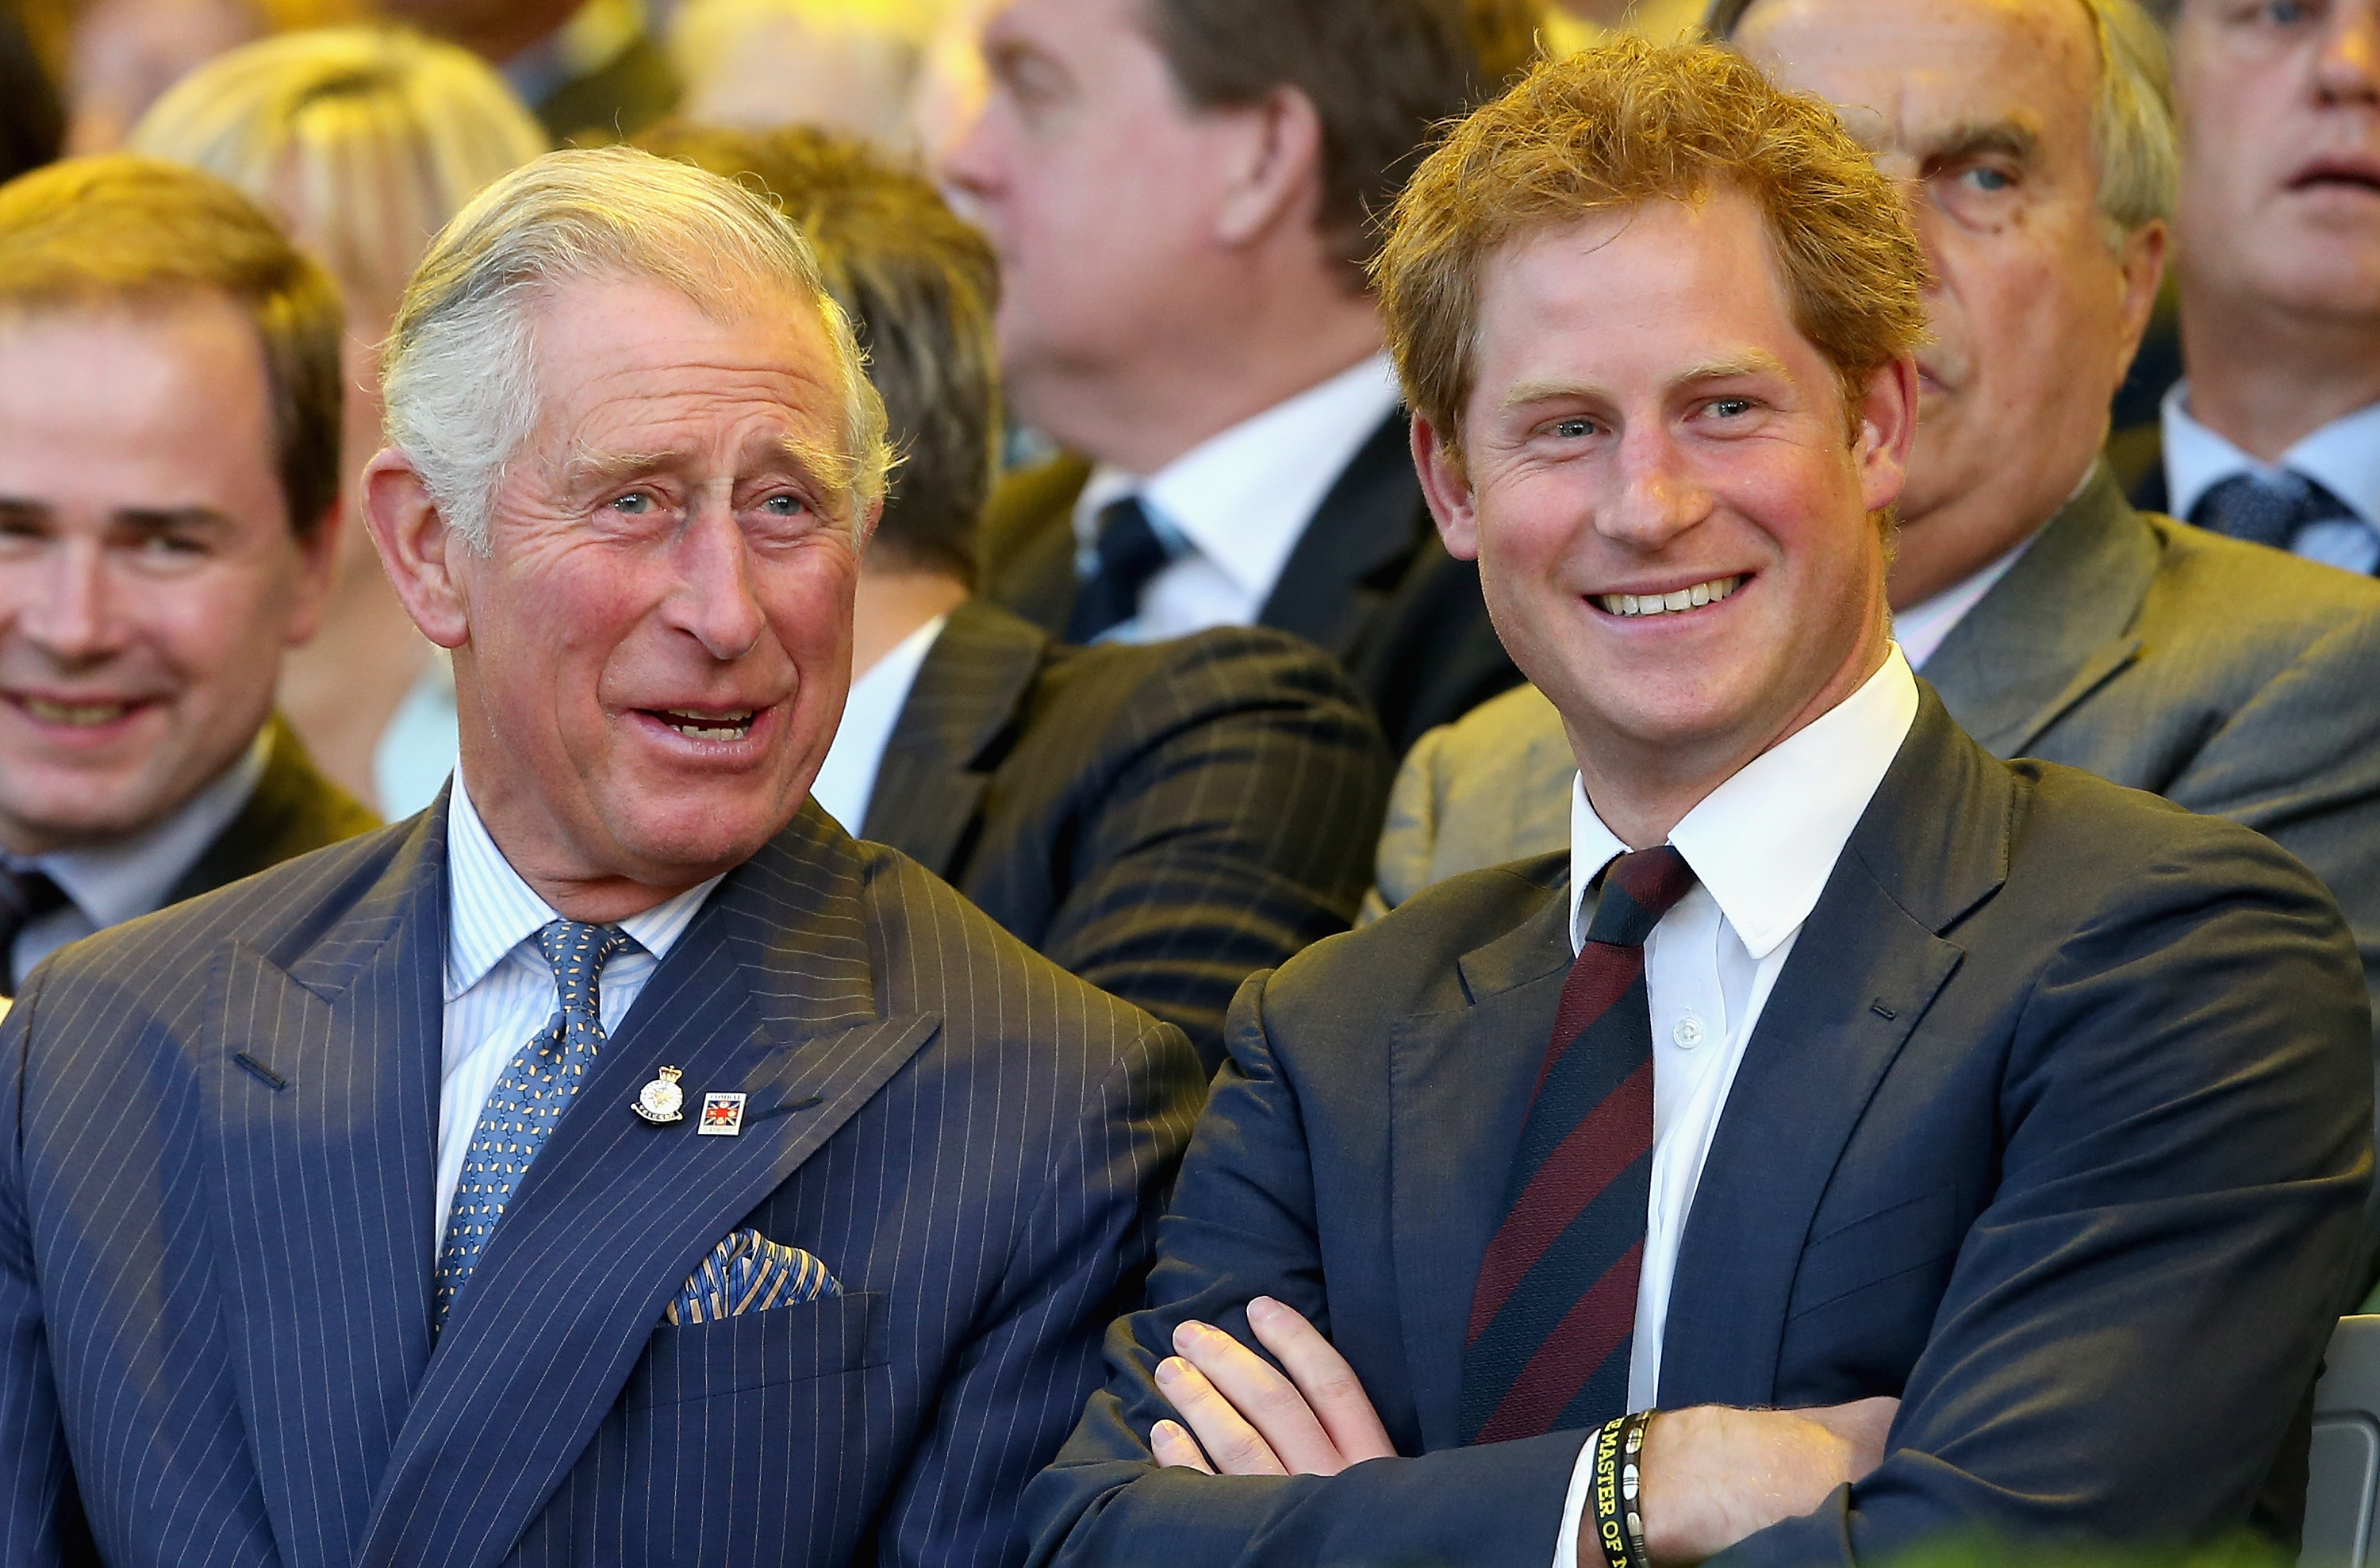 Le prince Charles et le prince Harry rient lors de la cérémonie d'ouverture des Invictus Games, le 10 septembre 2014 à Londres, en Angleterre | Source : Getty Images